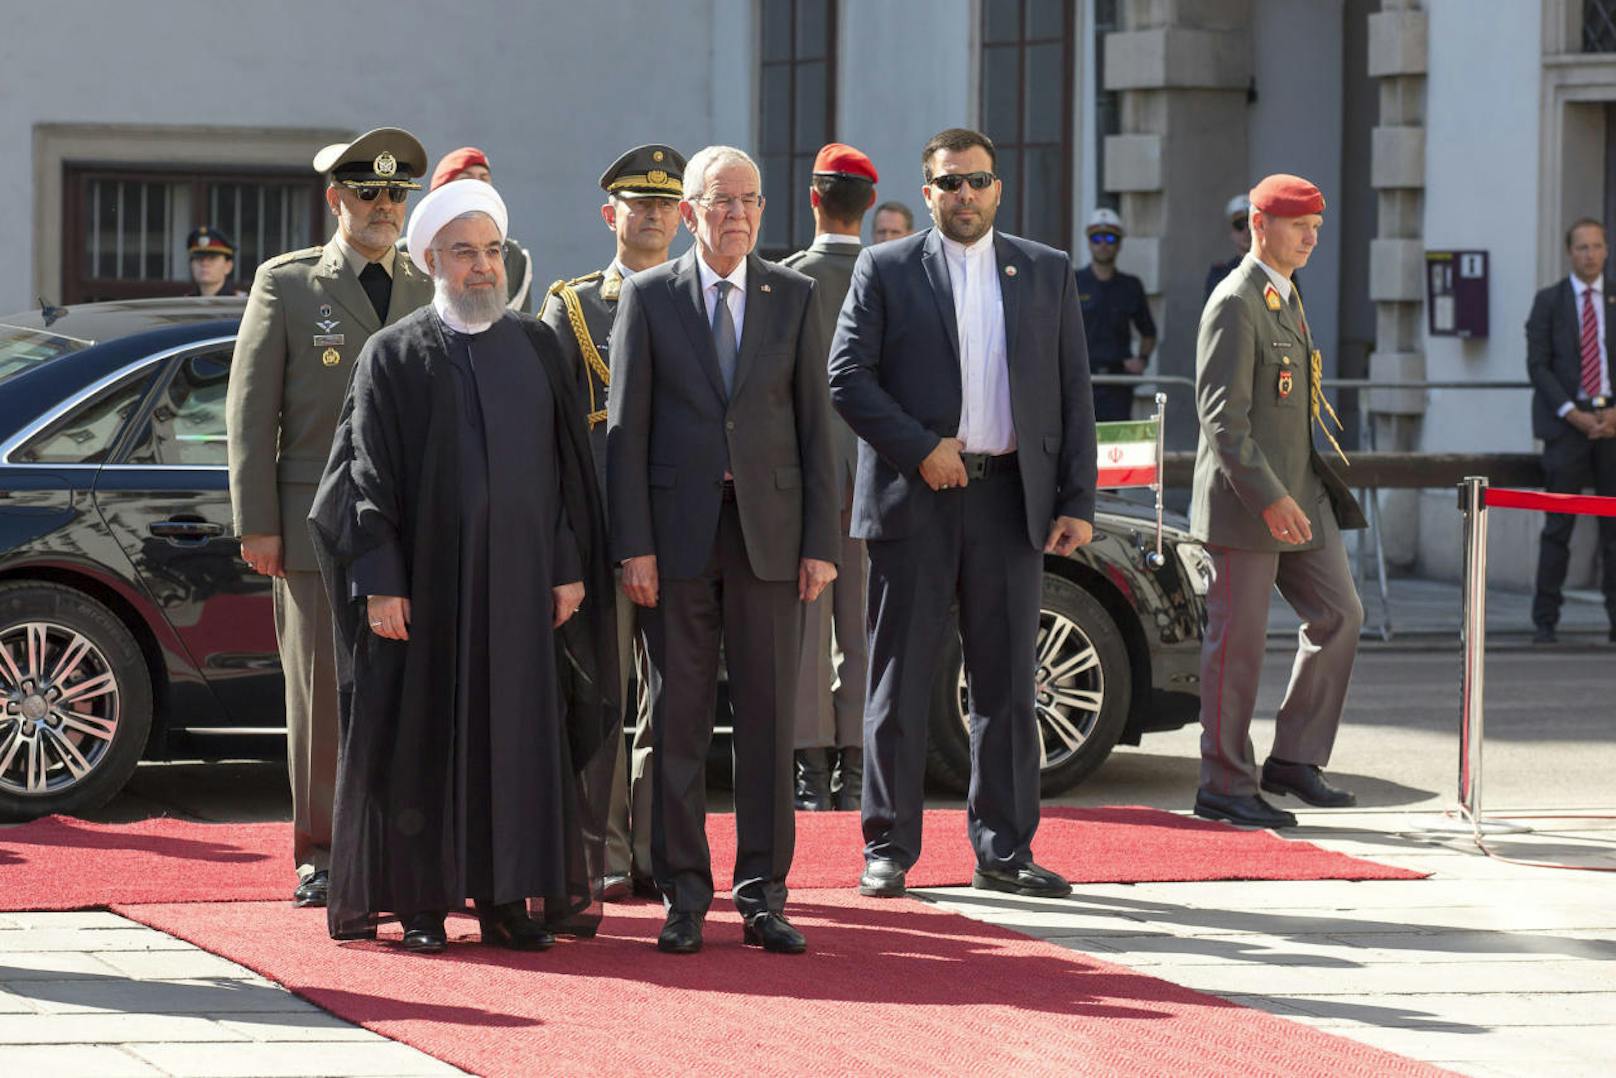 Der iranische Präsident Hassan Rouhani besuchte am Mittwoch Wien. Auf dem Programm stehen unter anderem Beratungen über die Rettung des Atomdeals, aus dem die USA ausgestiegen sind.